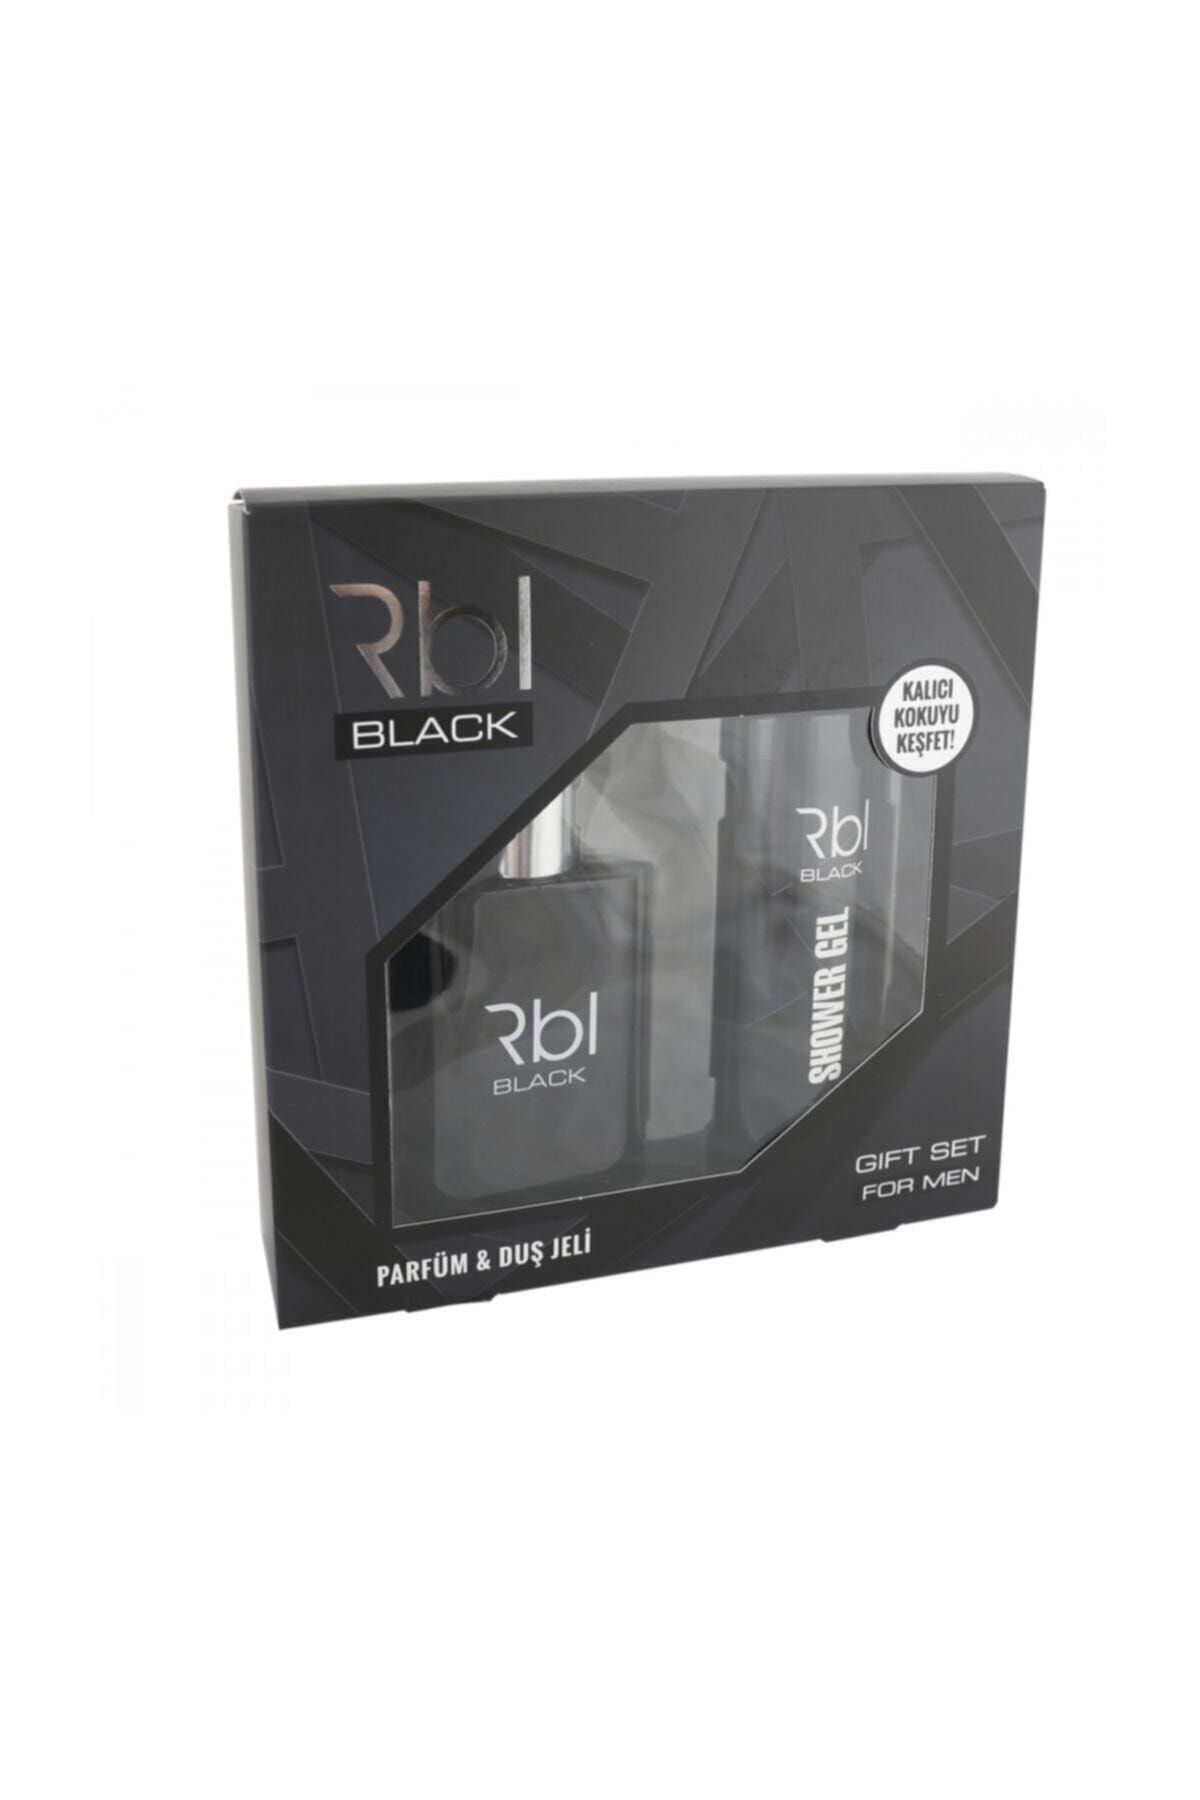 Rebul Rbl Black Erkek Parfümü 90 Ml Ve Duş Jeli 200 Ml Set